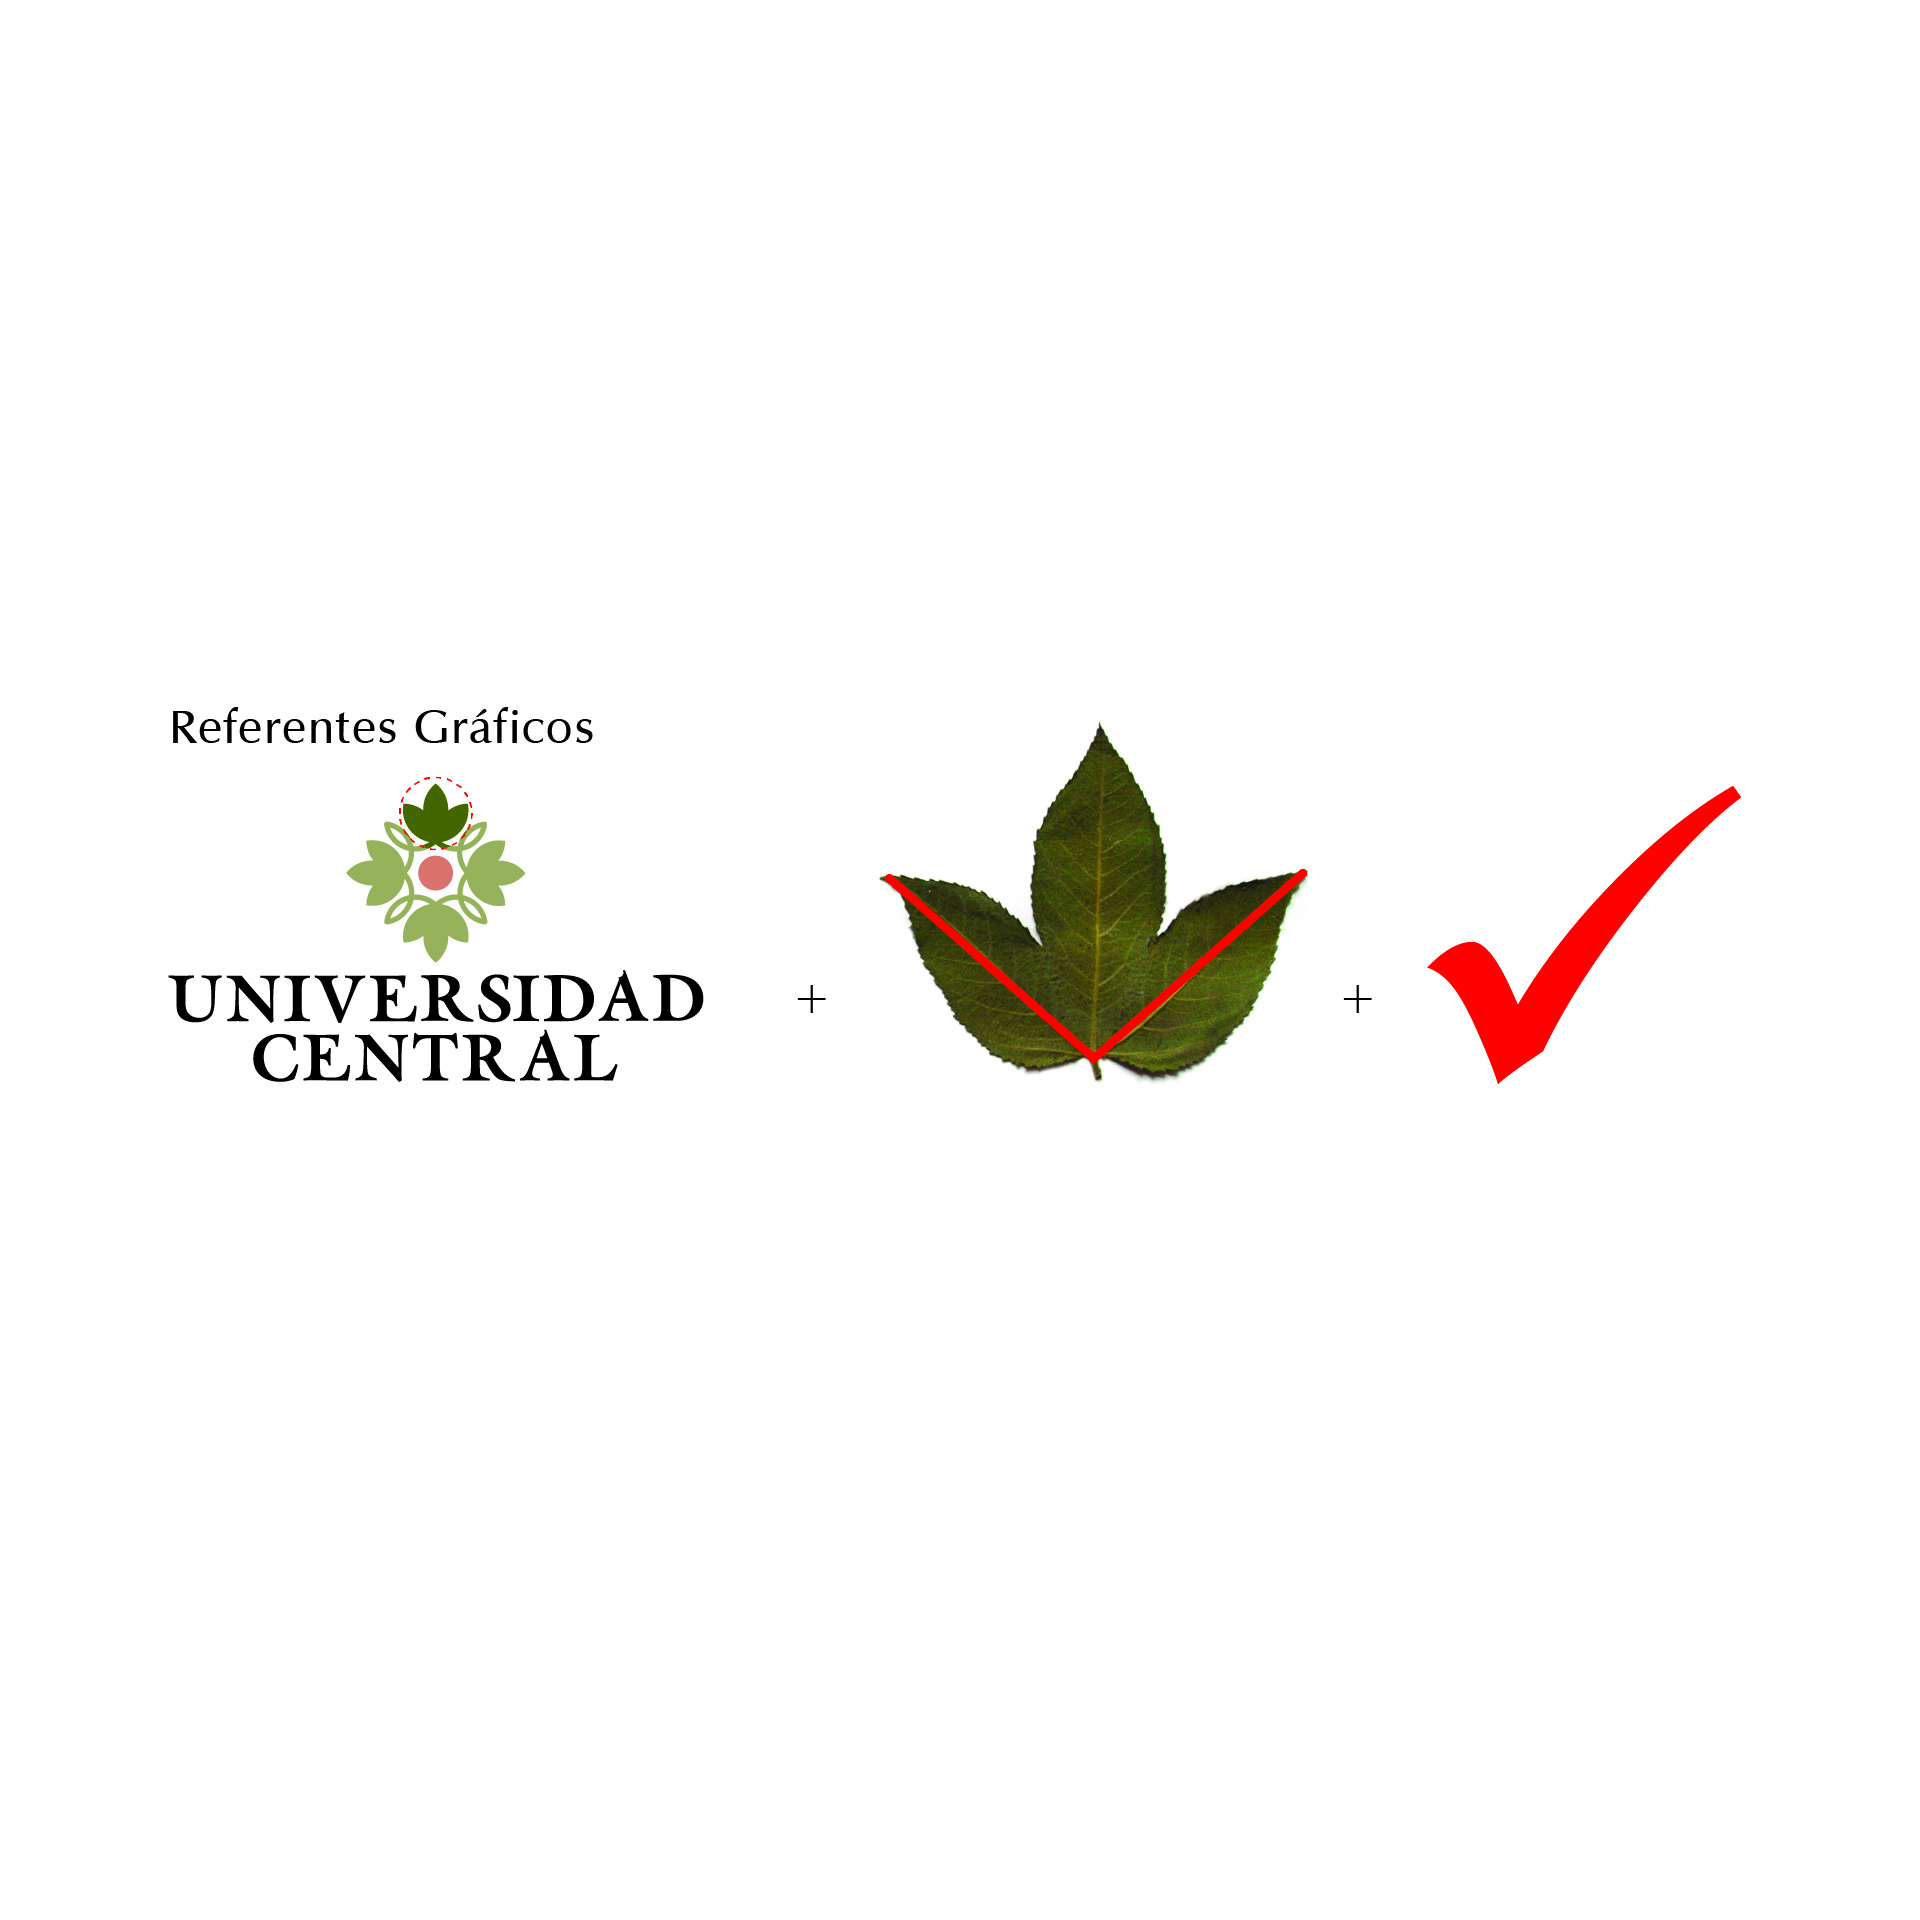 Diseño de Identidad Visual y Logotipo para la marca Acreditación Institucional de Alta Calidad - Universidad Central